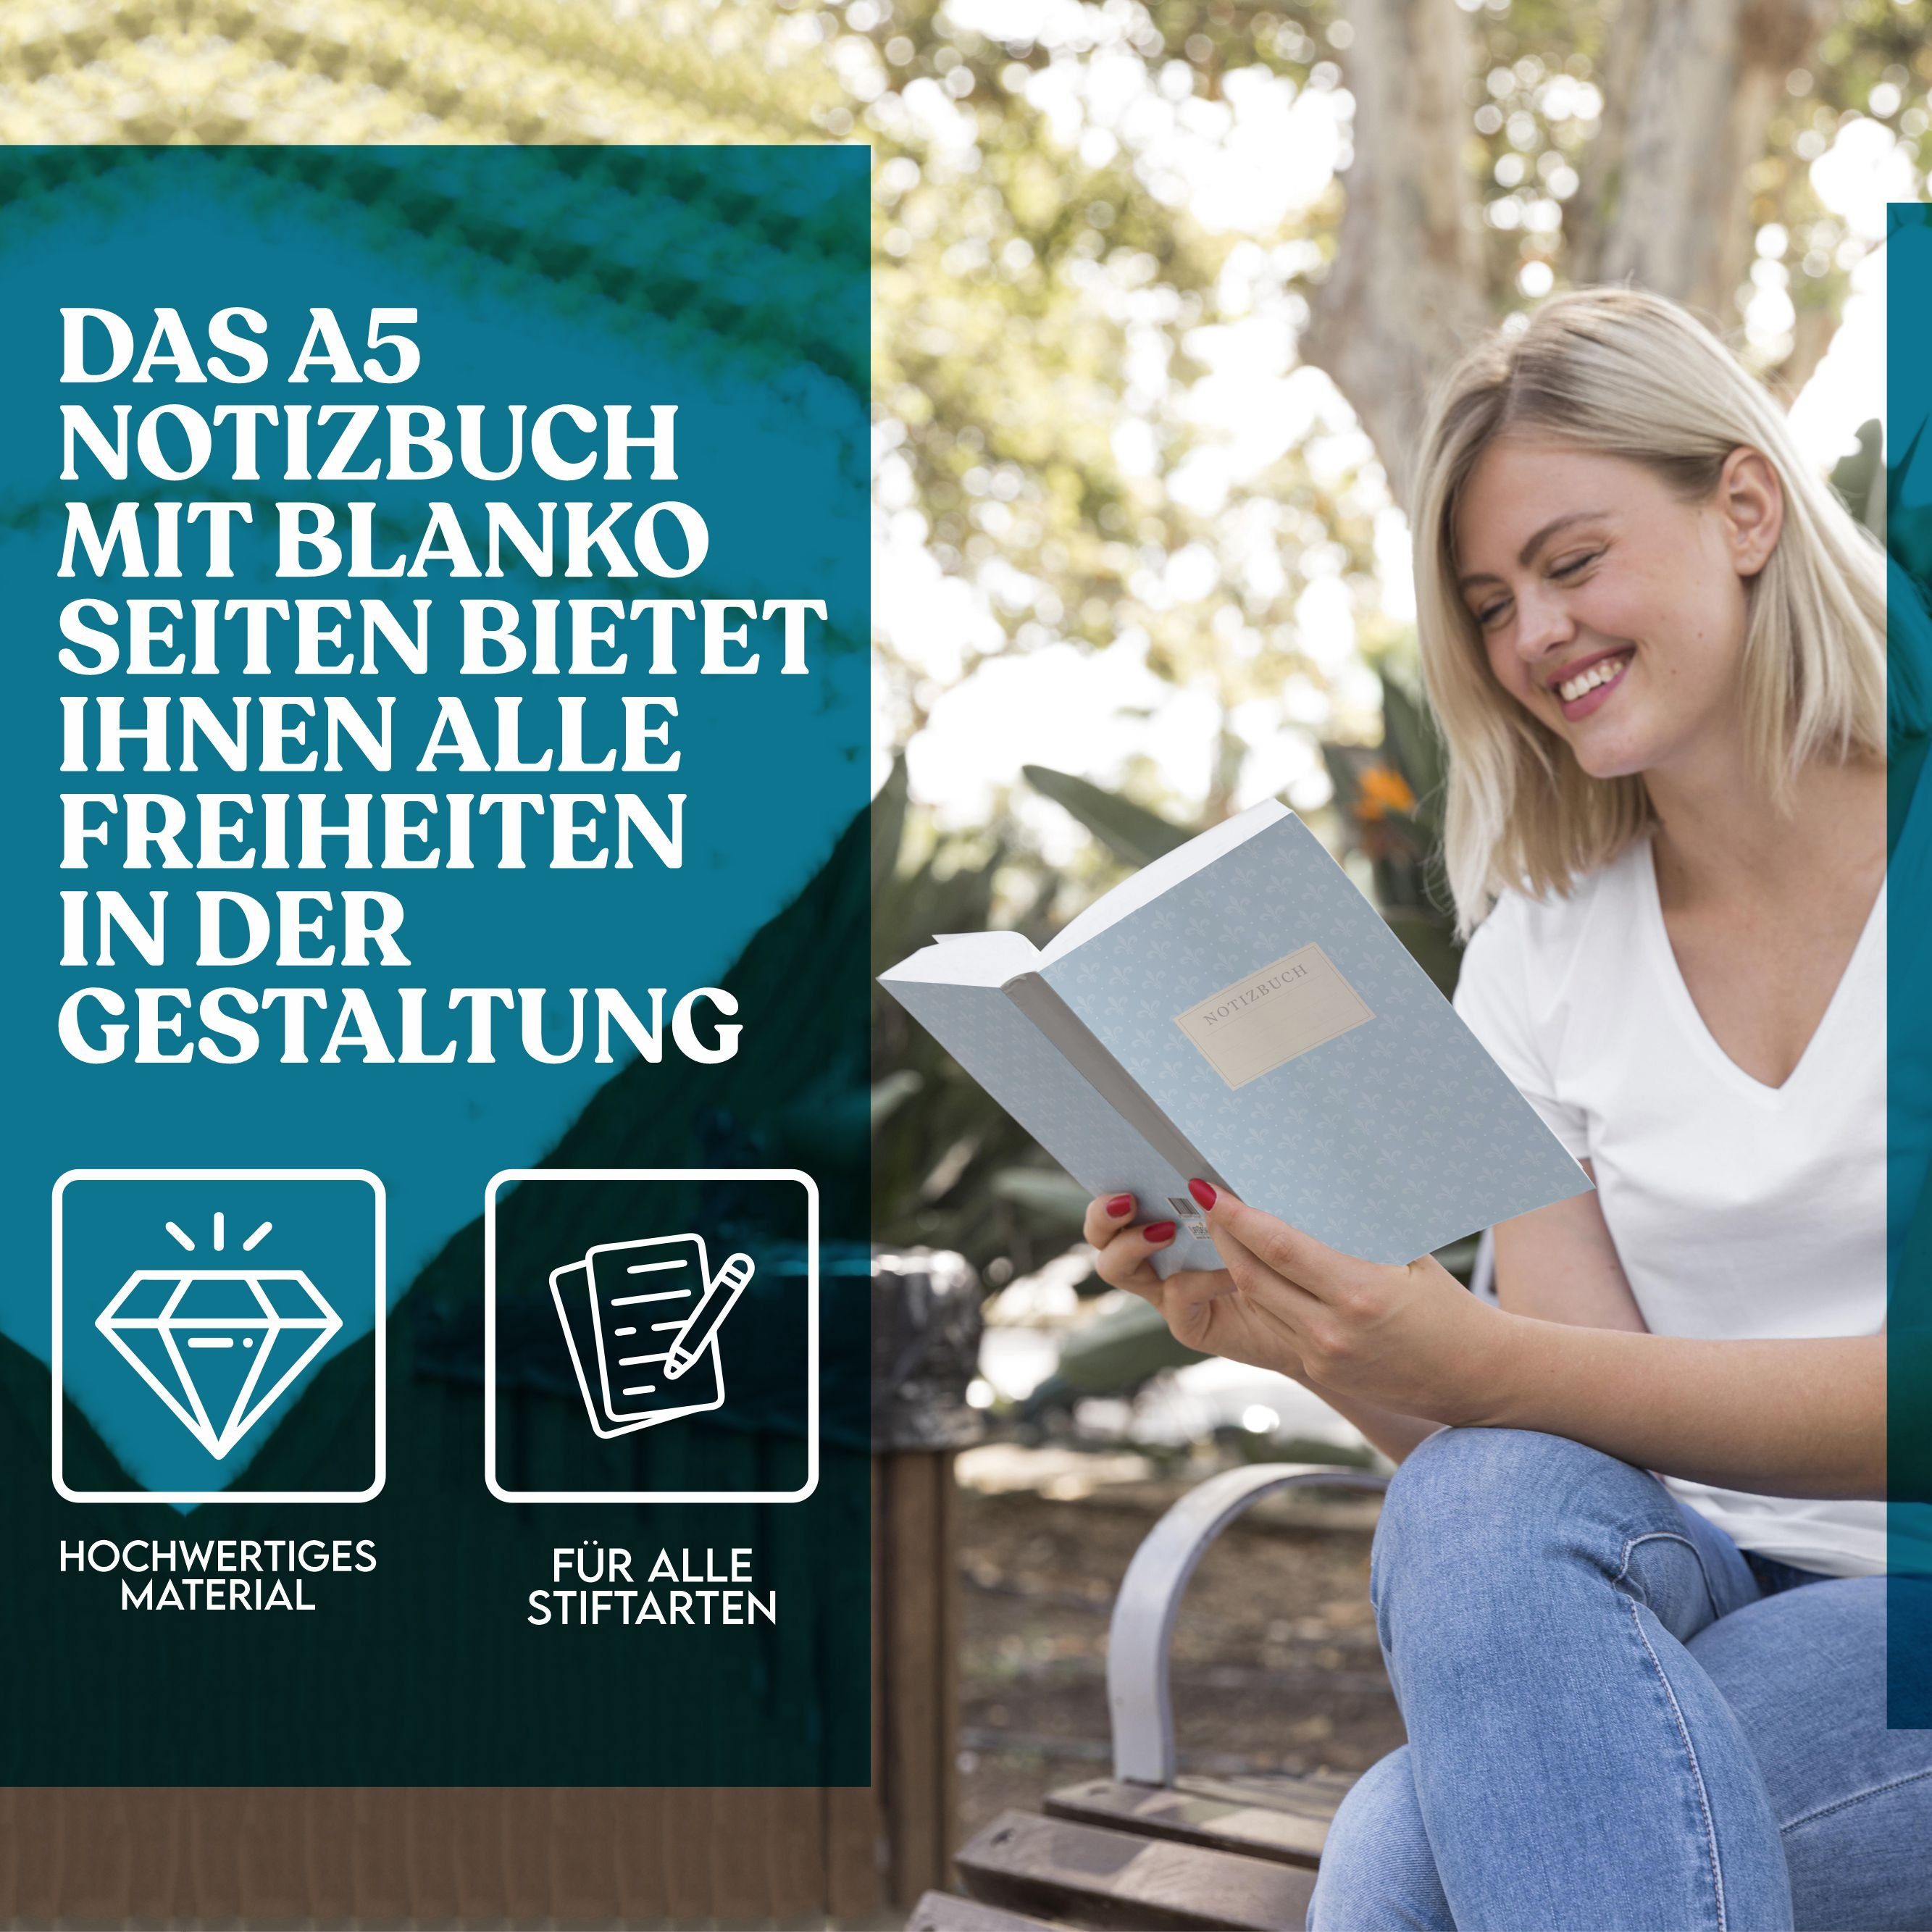 Hardcover, FSC- EU-Ecolabel Notizbuch Skizzenbuch, edles zertifizert A5 & LifeDesign DIN Fadenbindung, Papier, "Lilie"